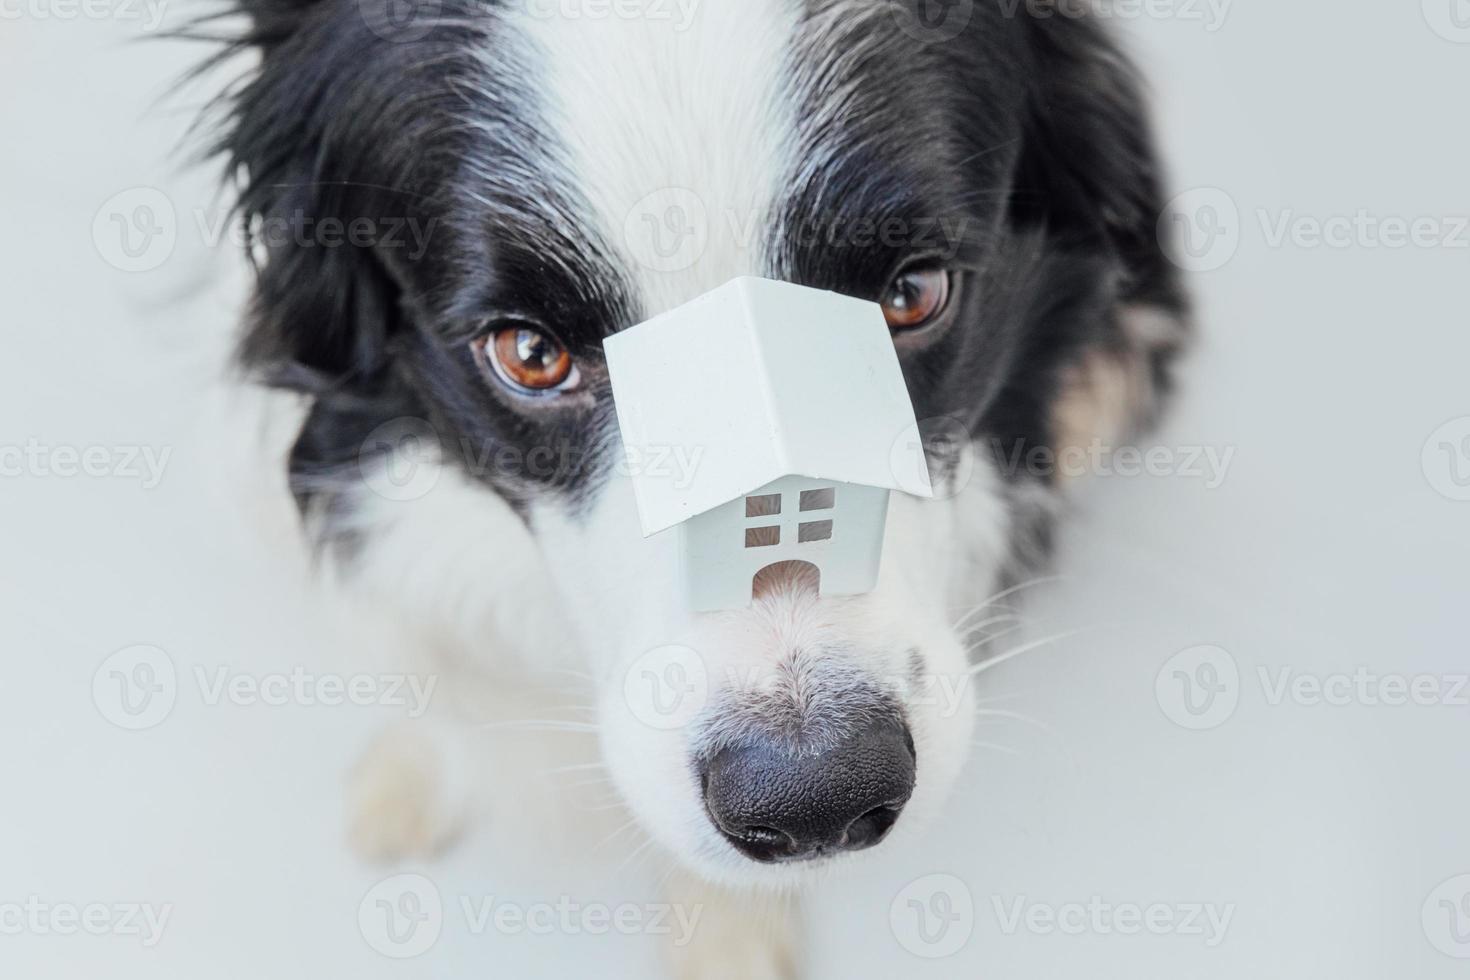 divertido retrato de lindo cachorro border collie sosteniendo casa modelo de juguete en miniatura en la nariz, aislado sobre fondo blanco. bienes raíces hipoteca propiedad dulce hogar perro refugio concepto foto